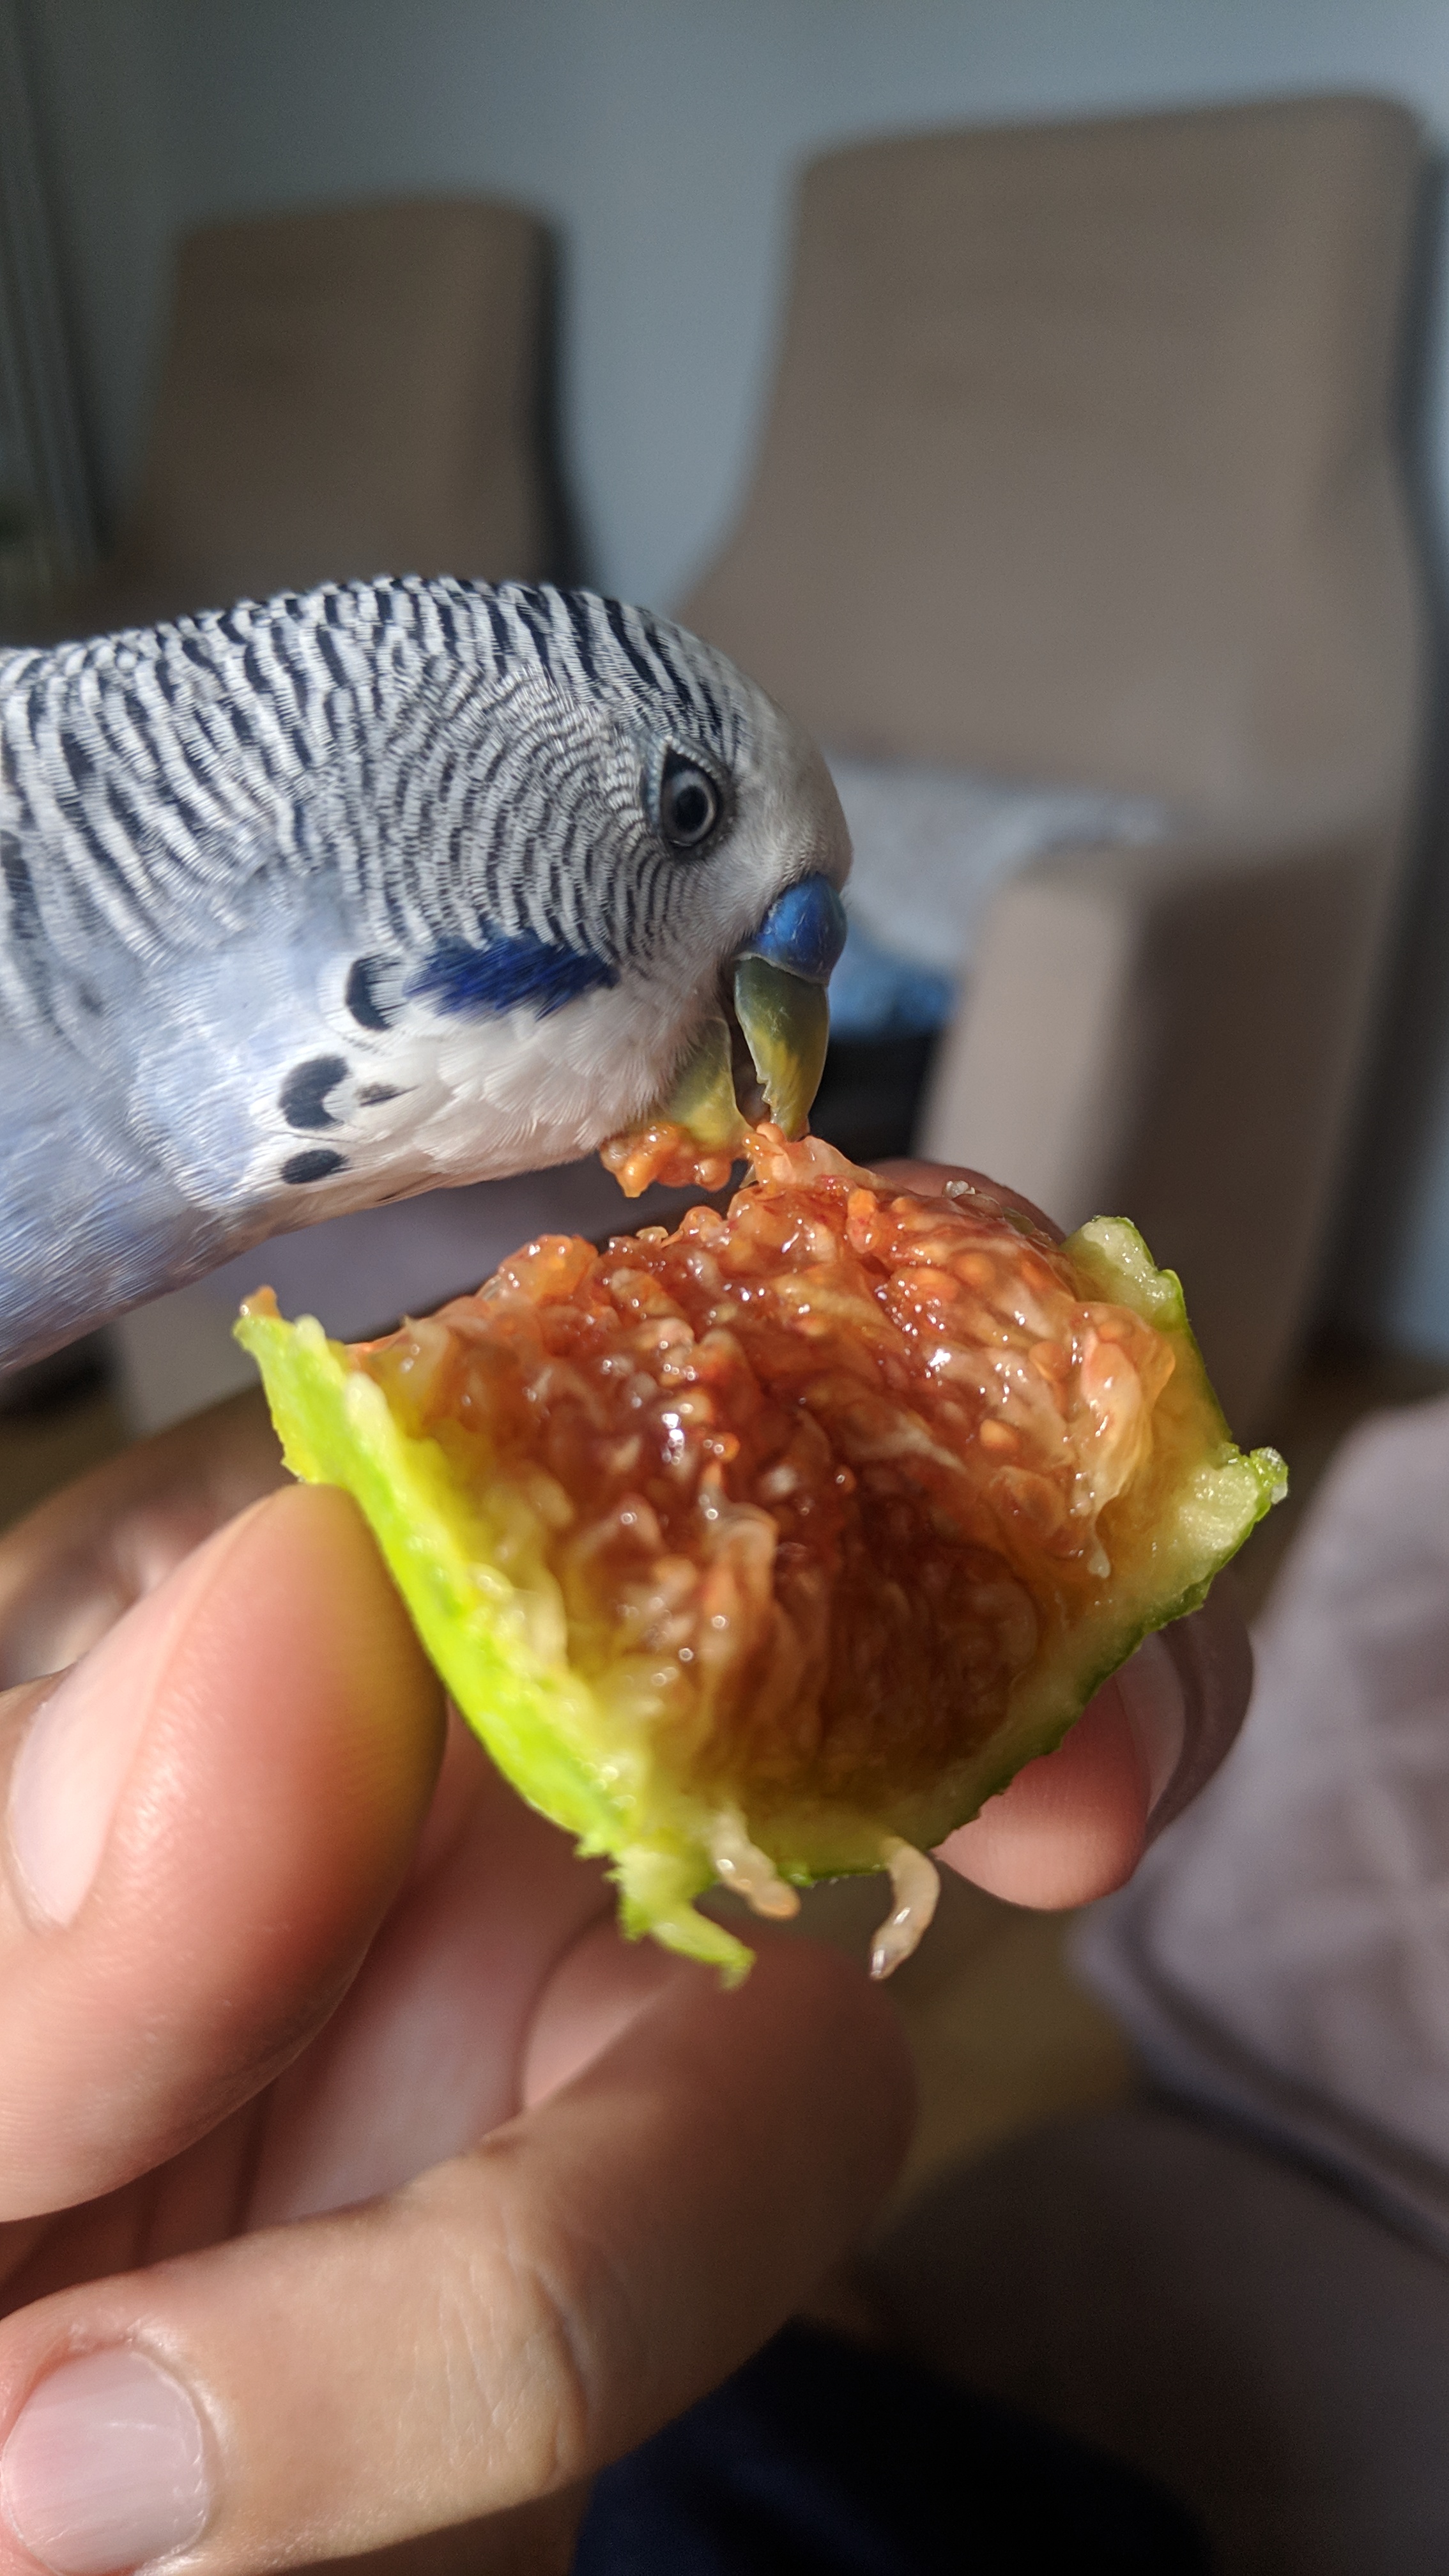 PIRPIR incir yiyor.